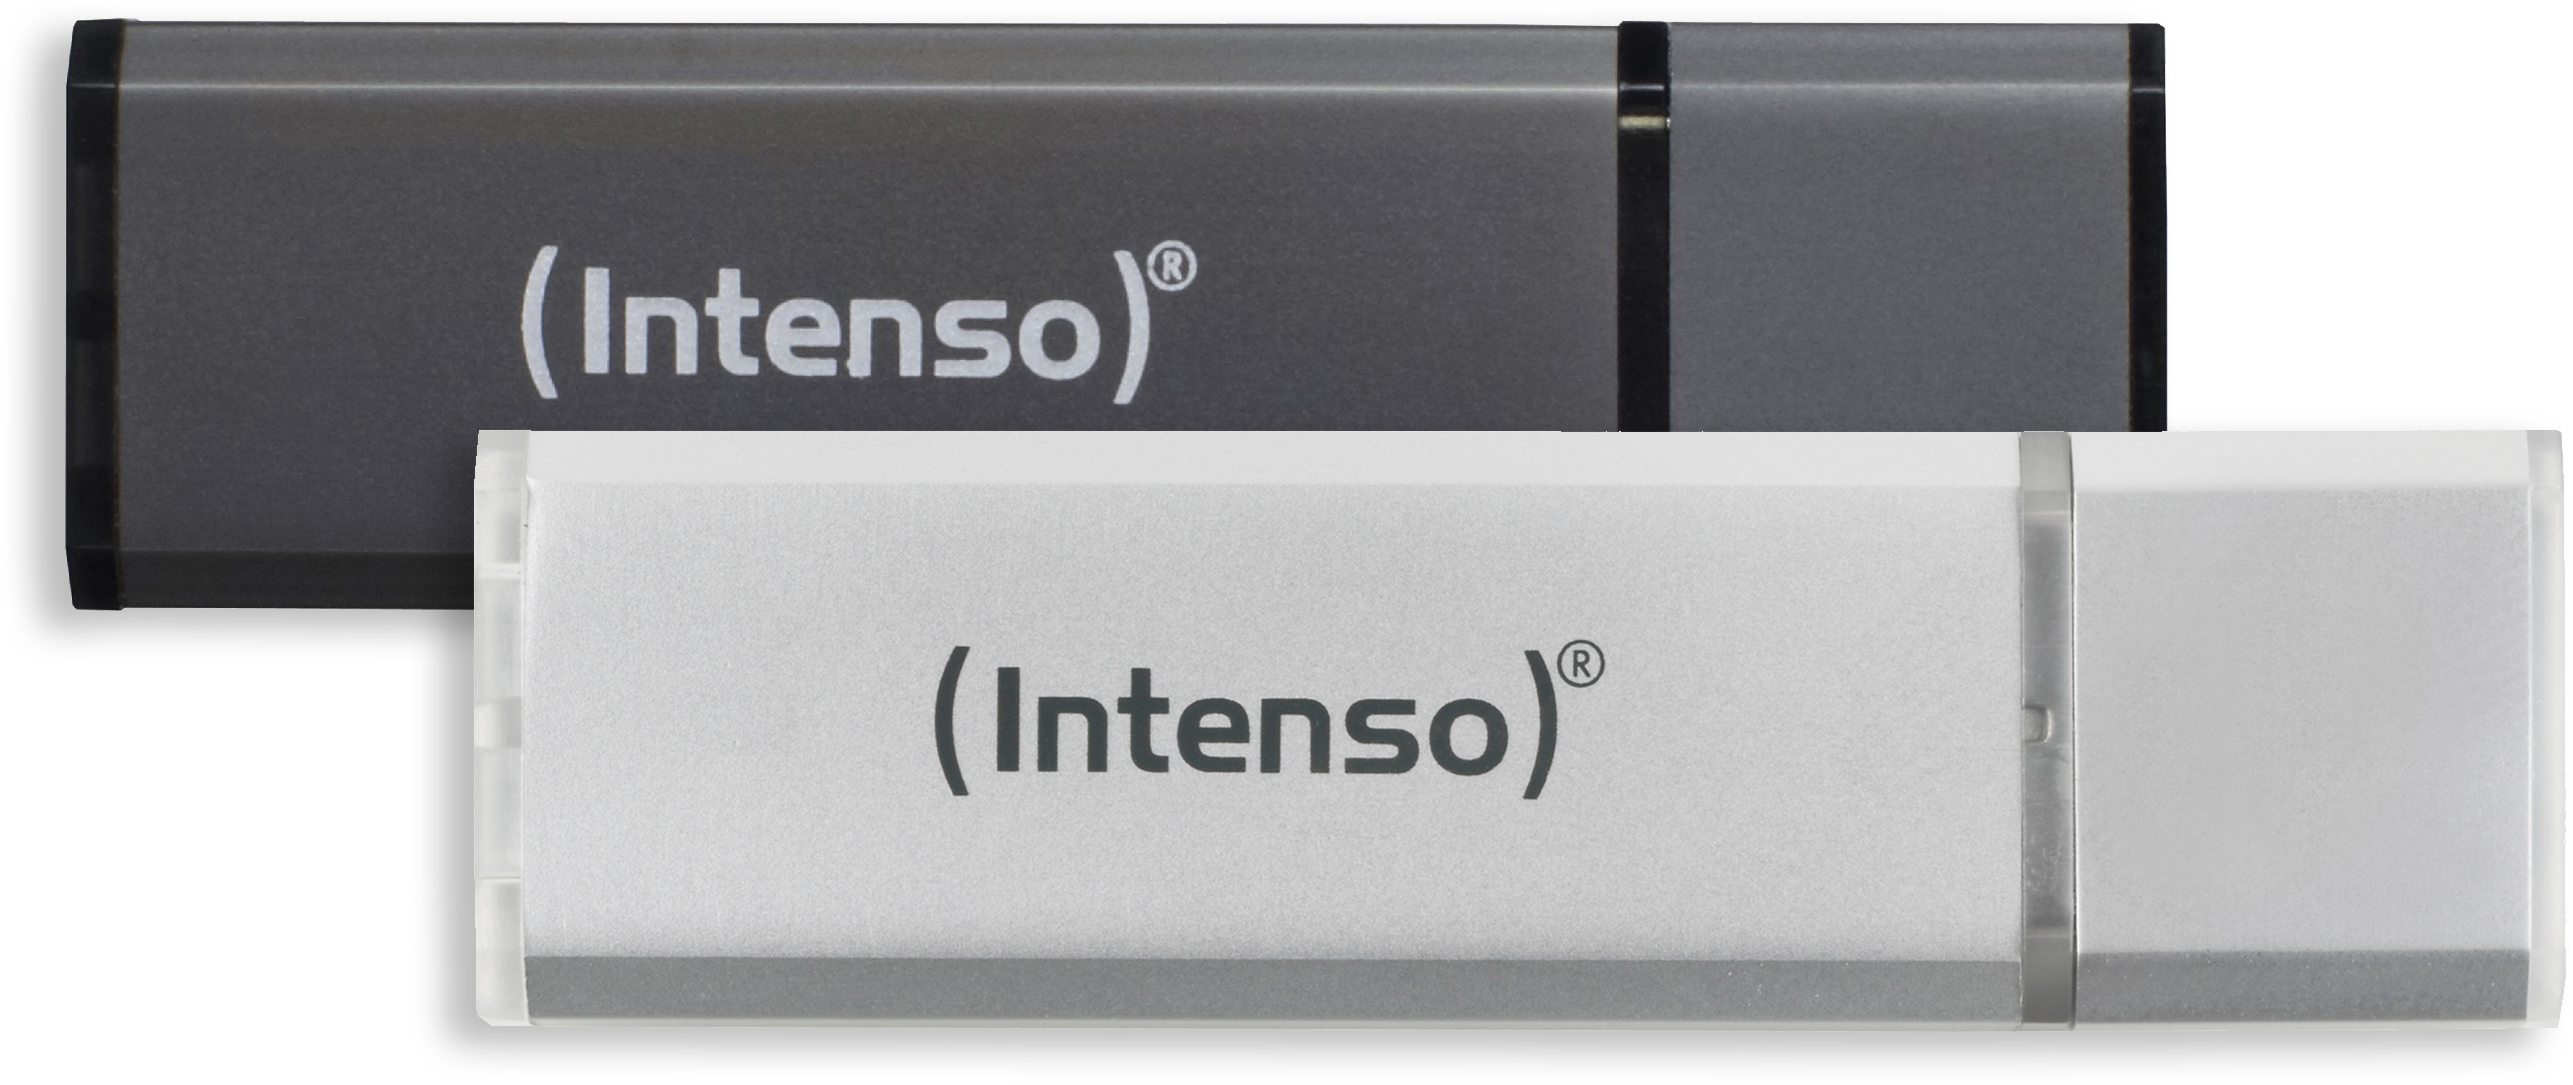 USB-Stick, Alu 28,00 Silber/Anthrazit INTENSO Line 2x GB, 32 MB/s,